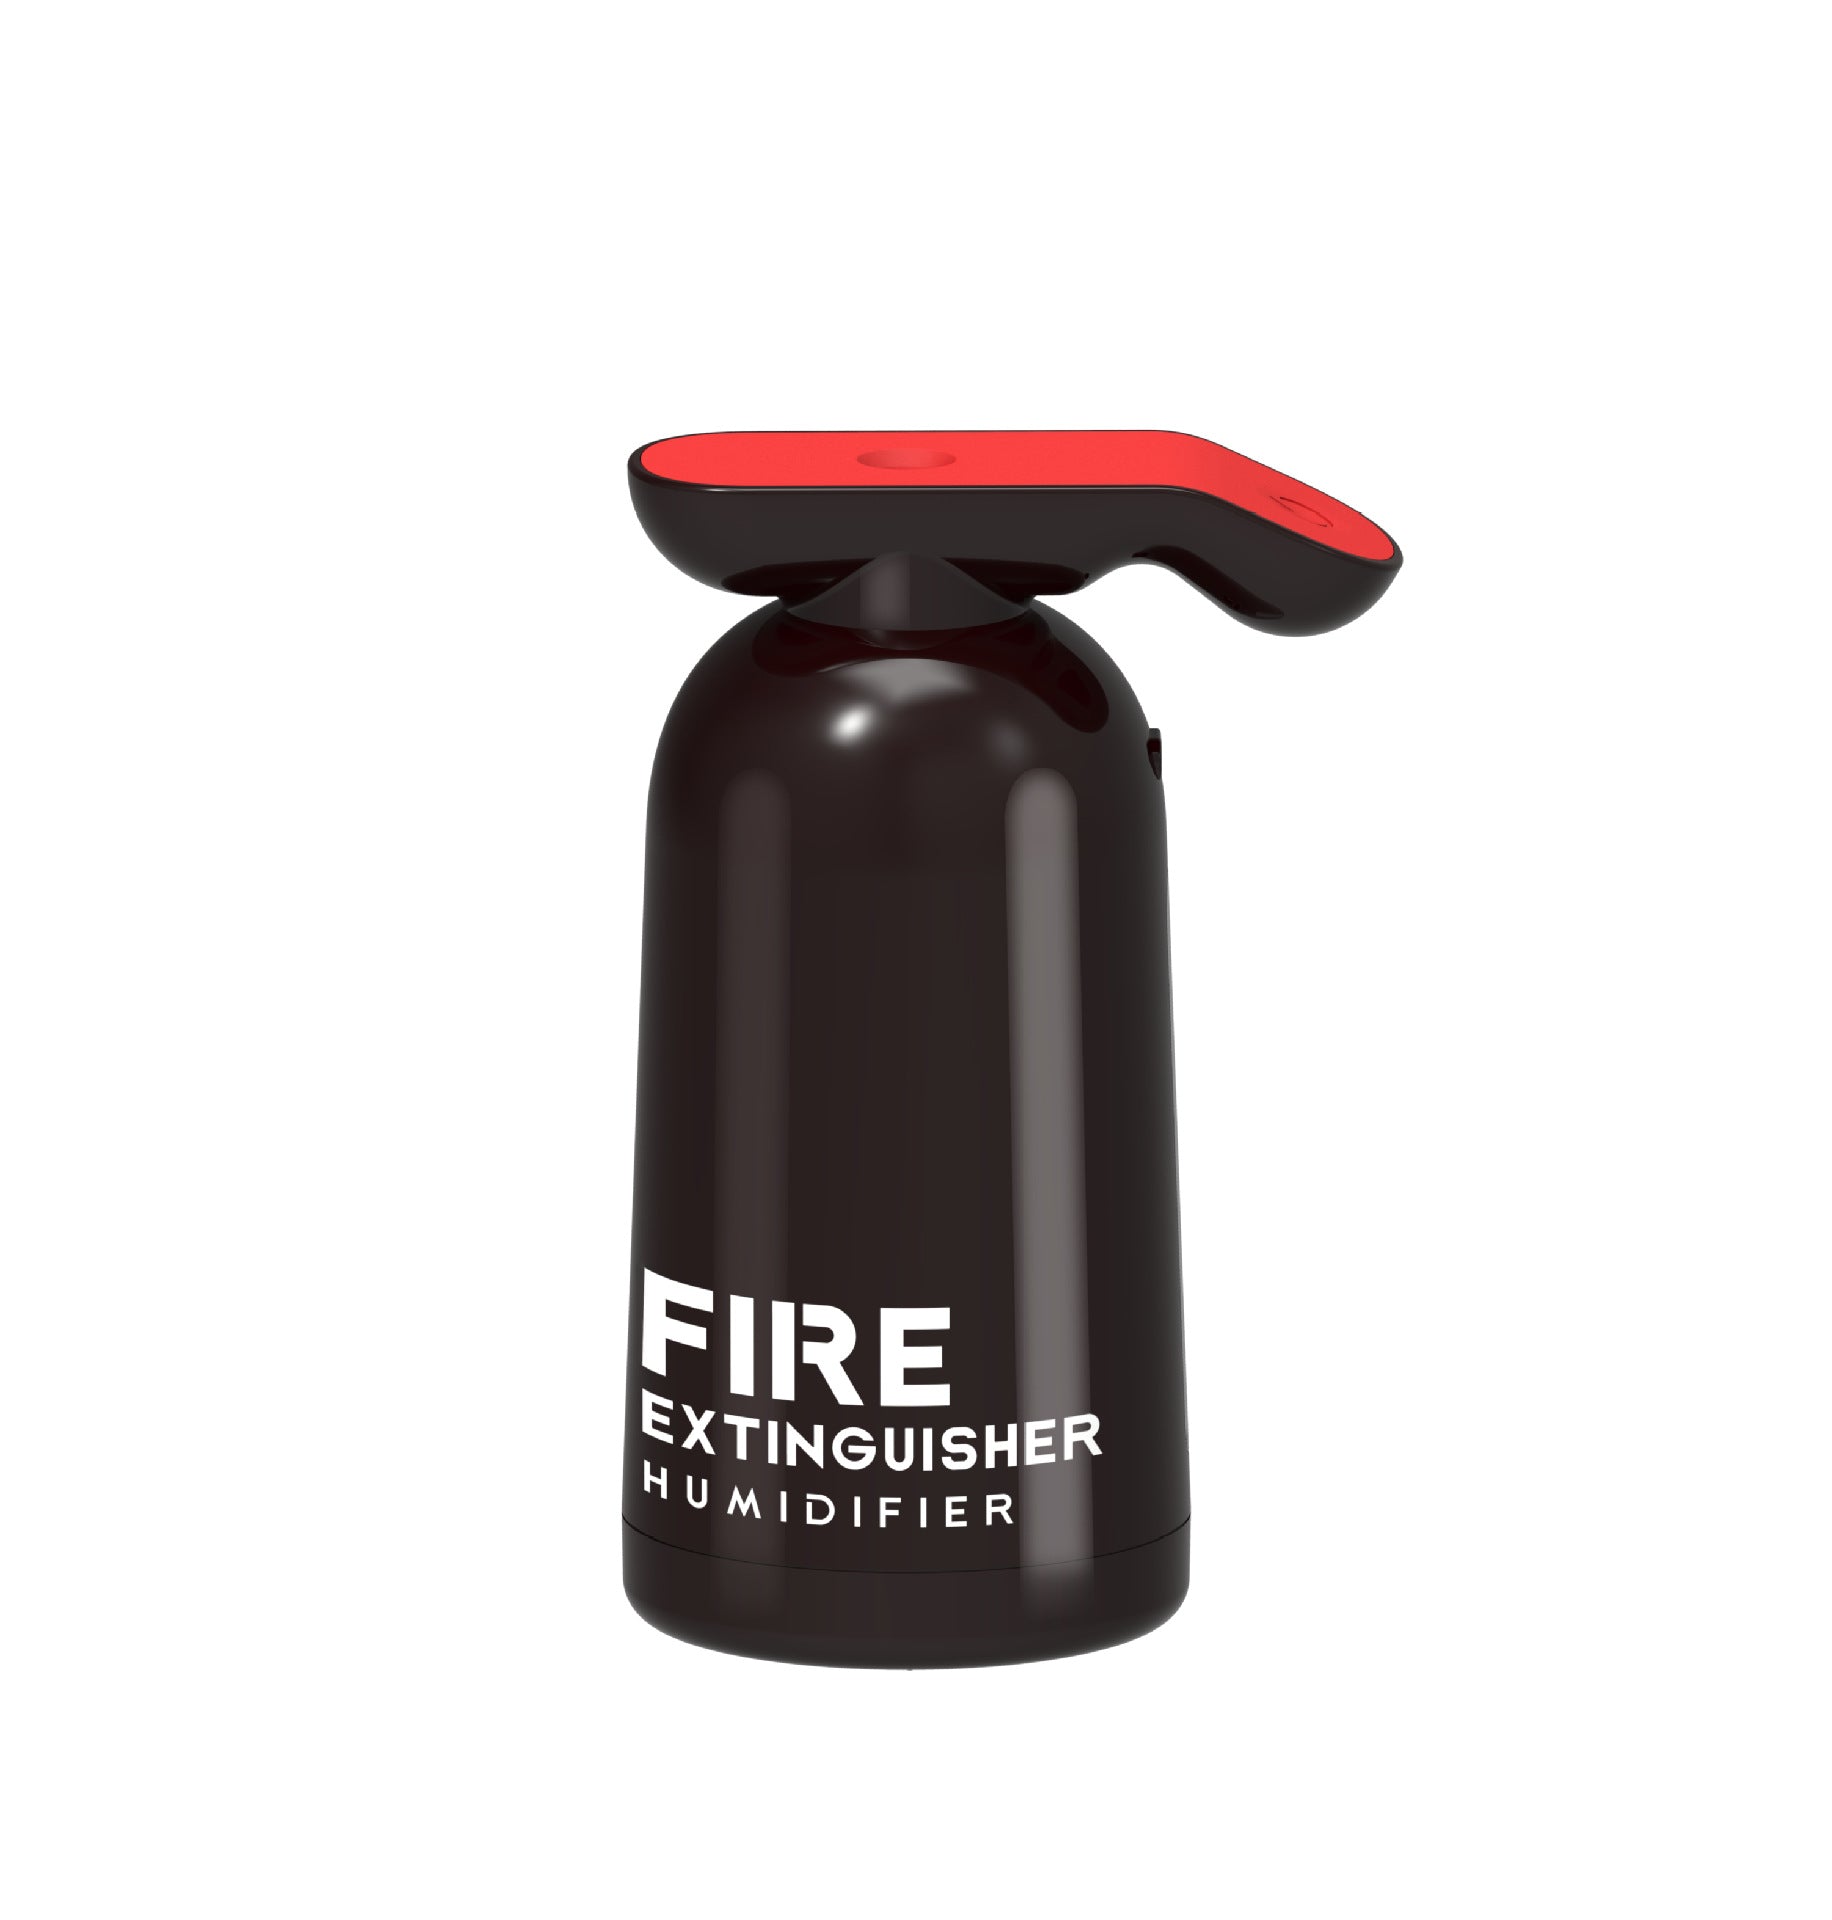 Fire extinguishing humidifier